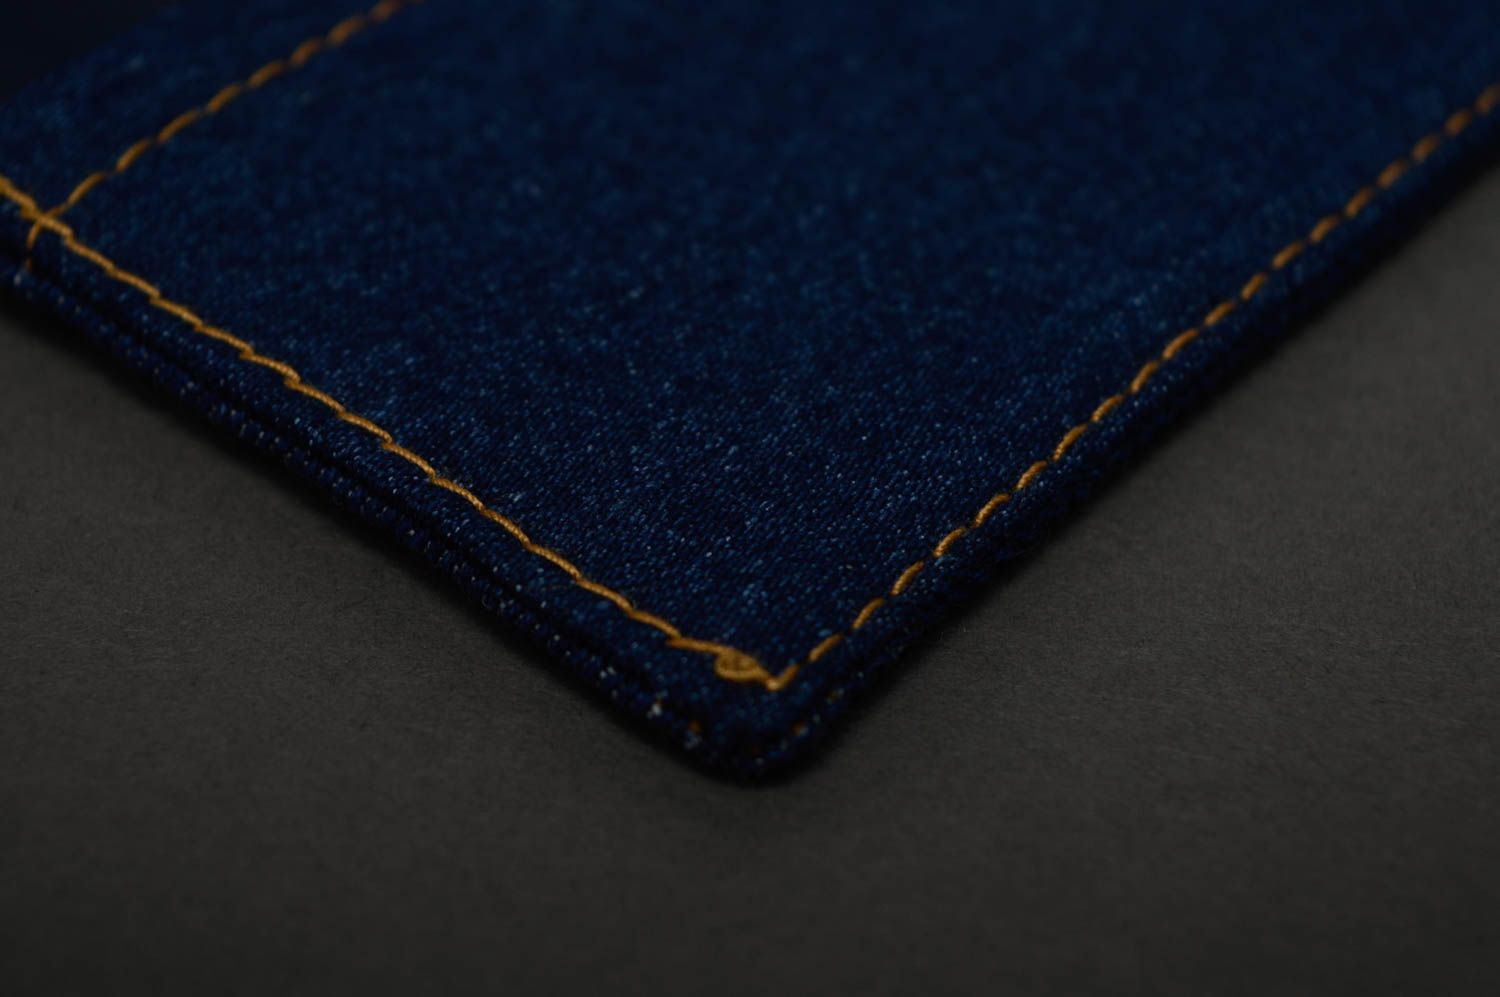 Copertina per taccuino fatta a mano di jeans con ricamo copertina blocco note foto 5